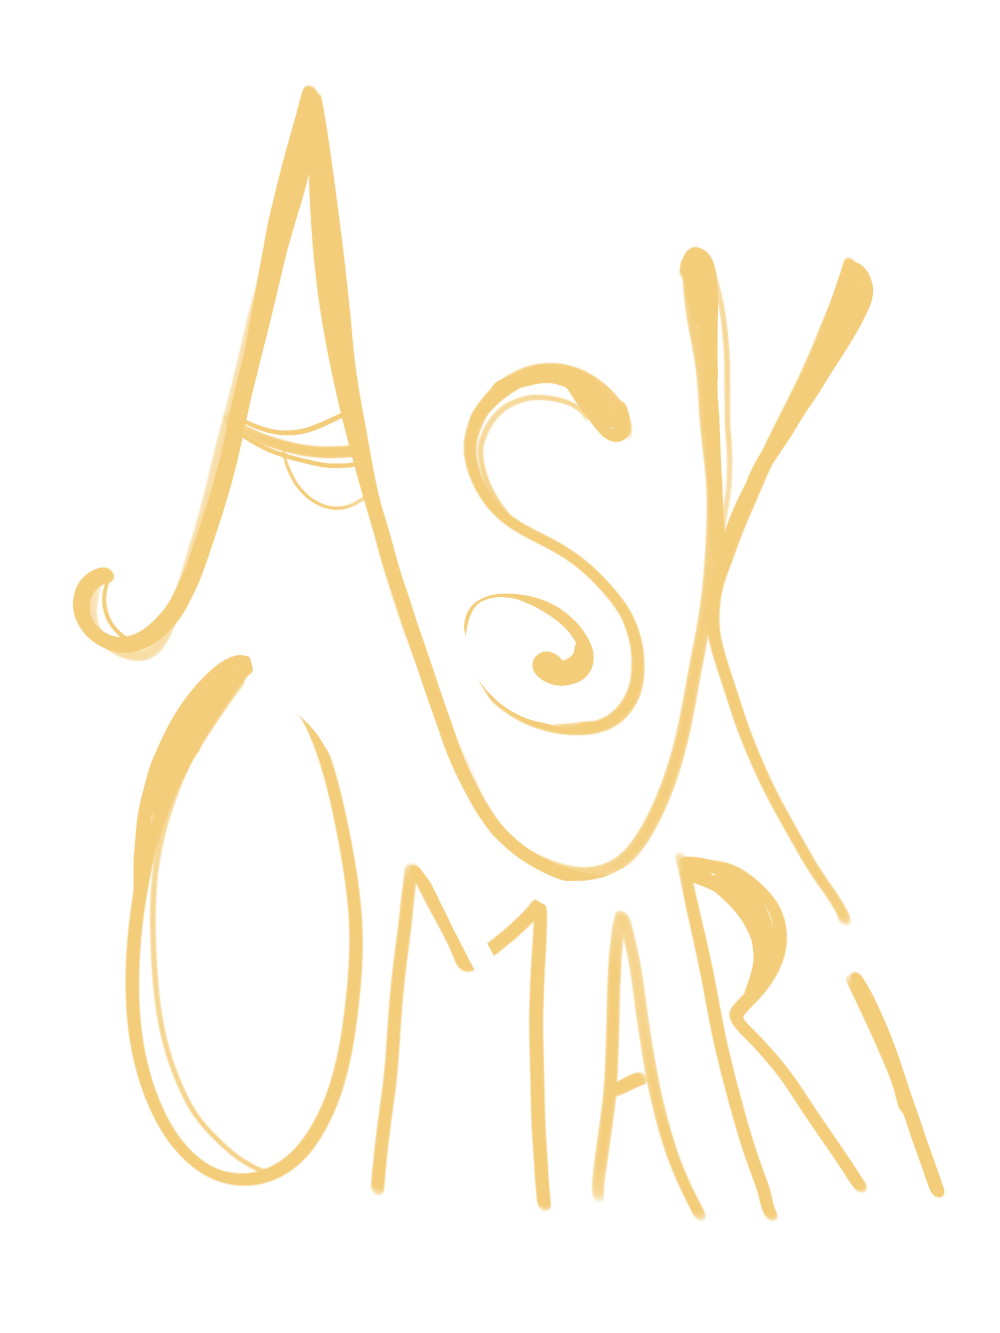 Ask Omari